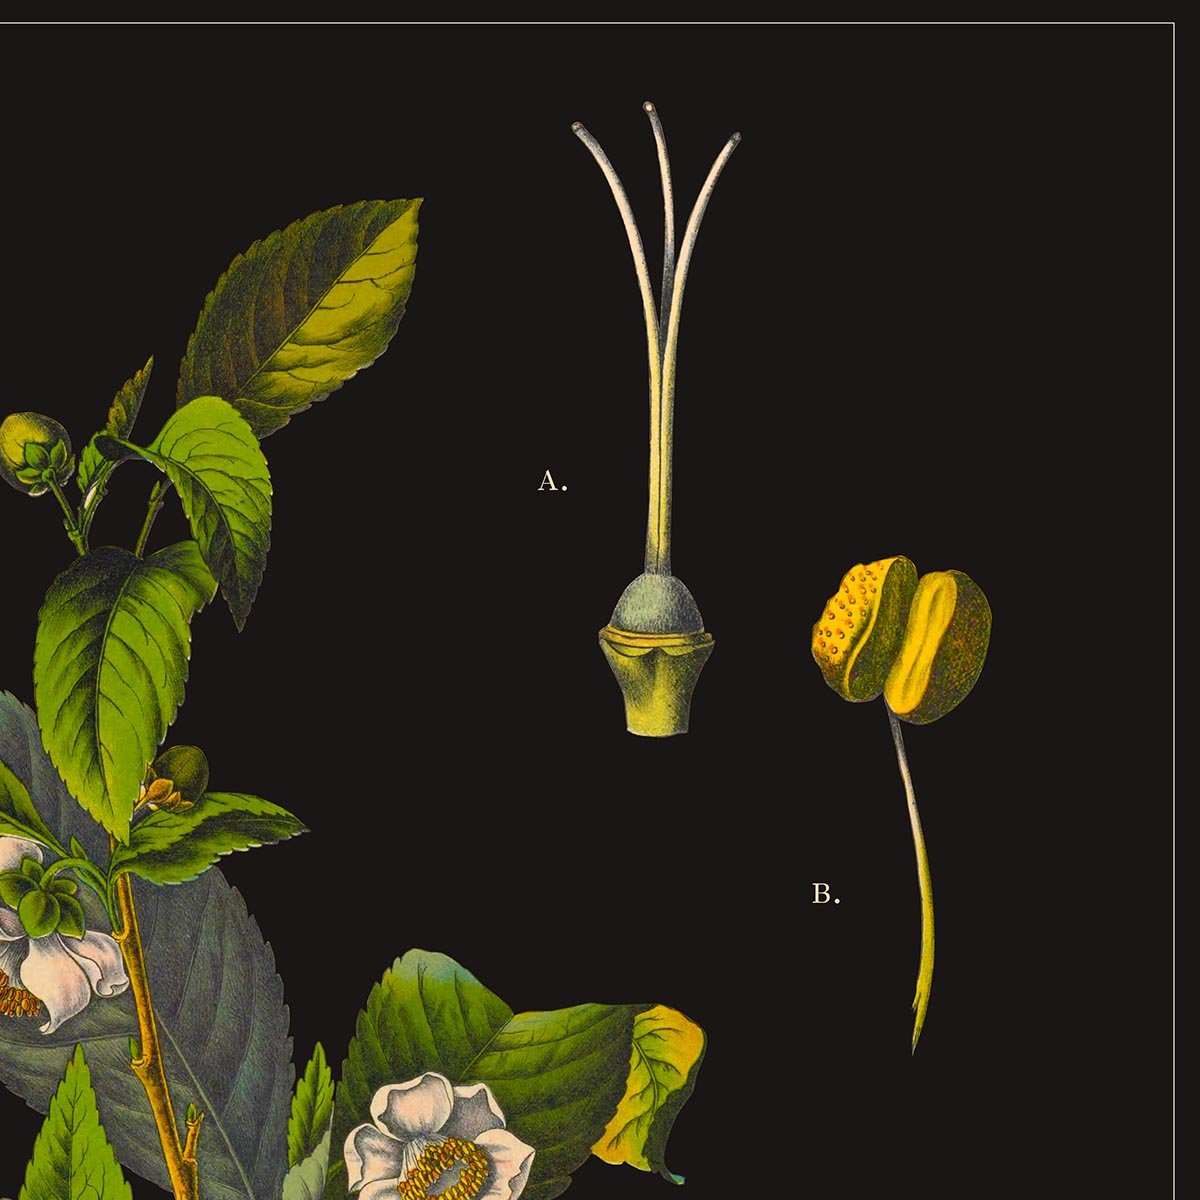 Tea Botanical Poster